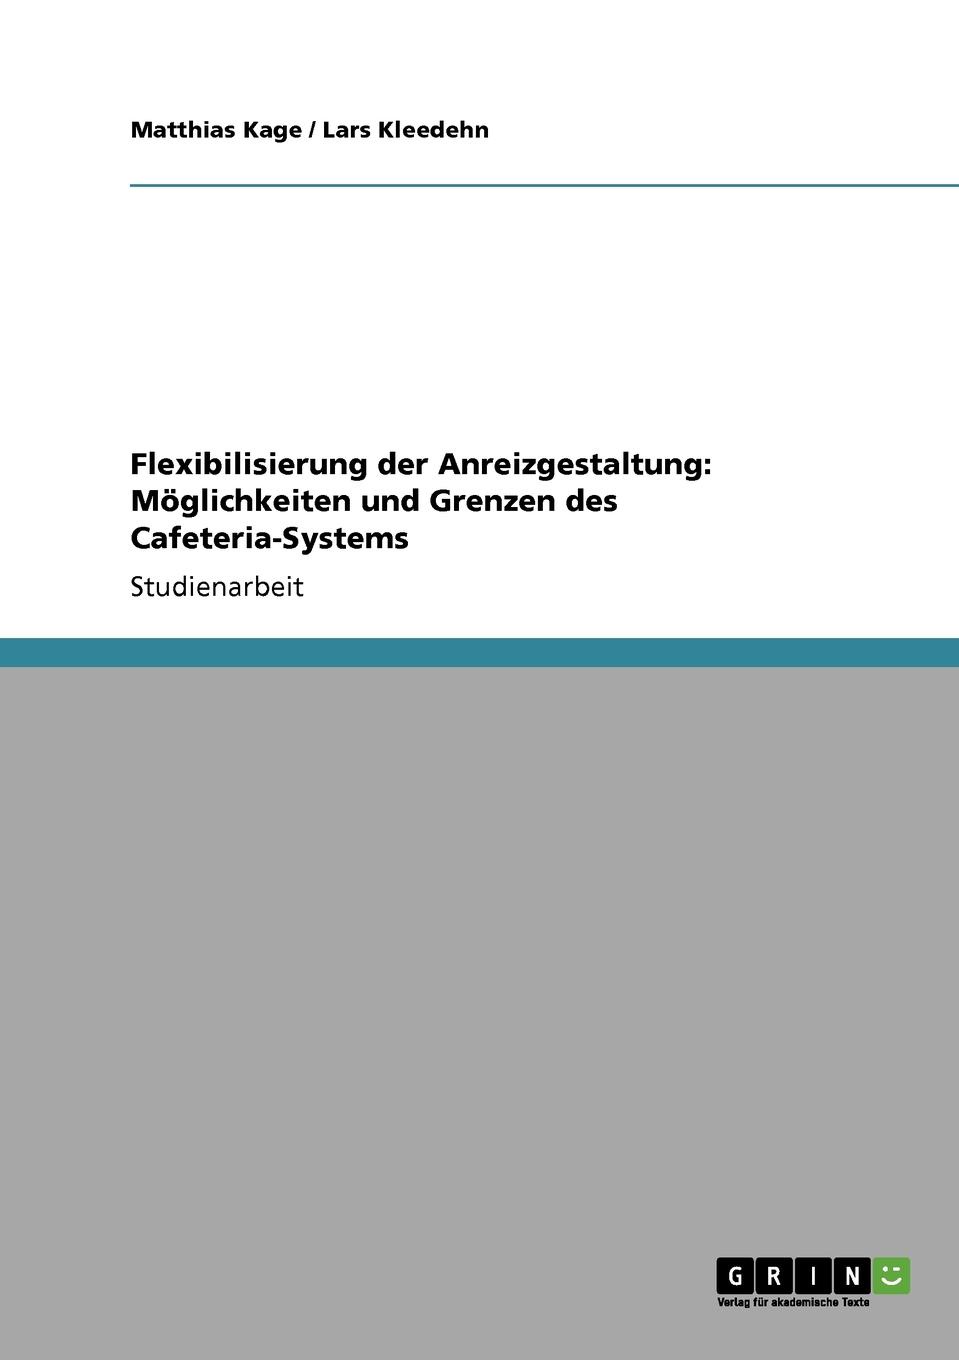 Matthias Kage, Lars Kleedehn Flexibilisierung der Anreizgestaltung. Moglichkeiten und Grenzen des Cafeteria-Systems